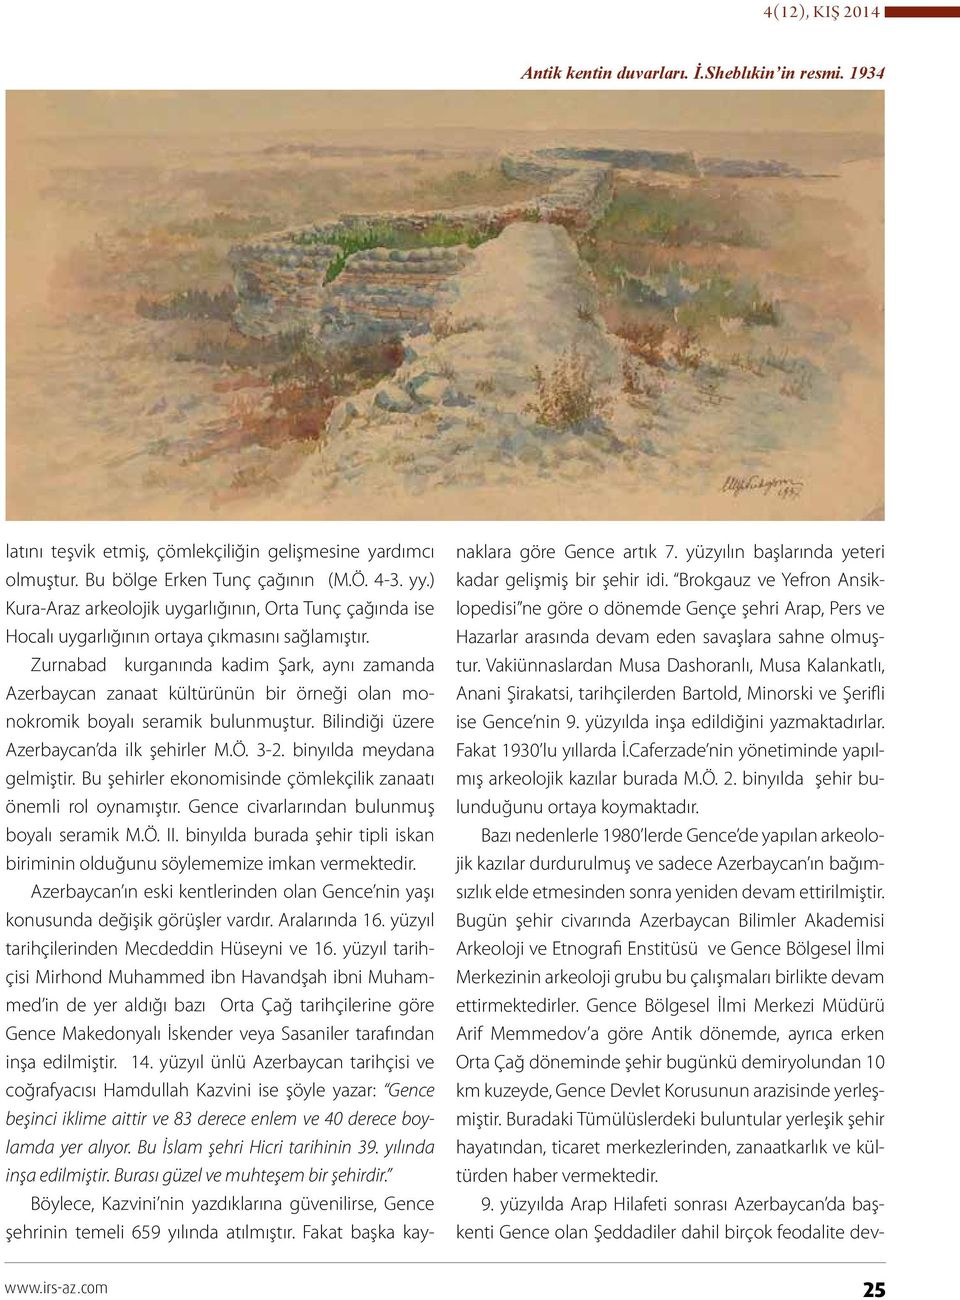 Zurnabad kurganında kadim Şark, aynı zamanda Azerbaycan zanaat kültürünün bir örneği olan monokromik boyalı seramik bulunmuştur. Bilindiği üzere Azerbaycan da ilk şehirler M.Ö. 3-2.